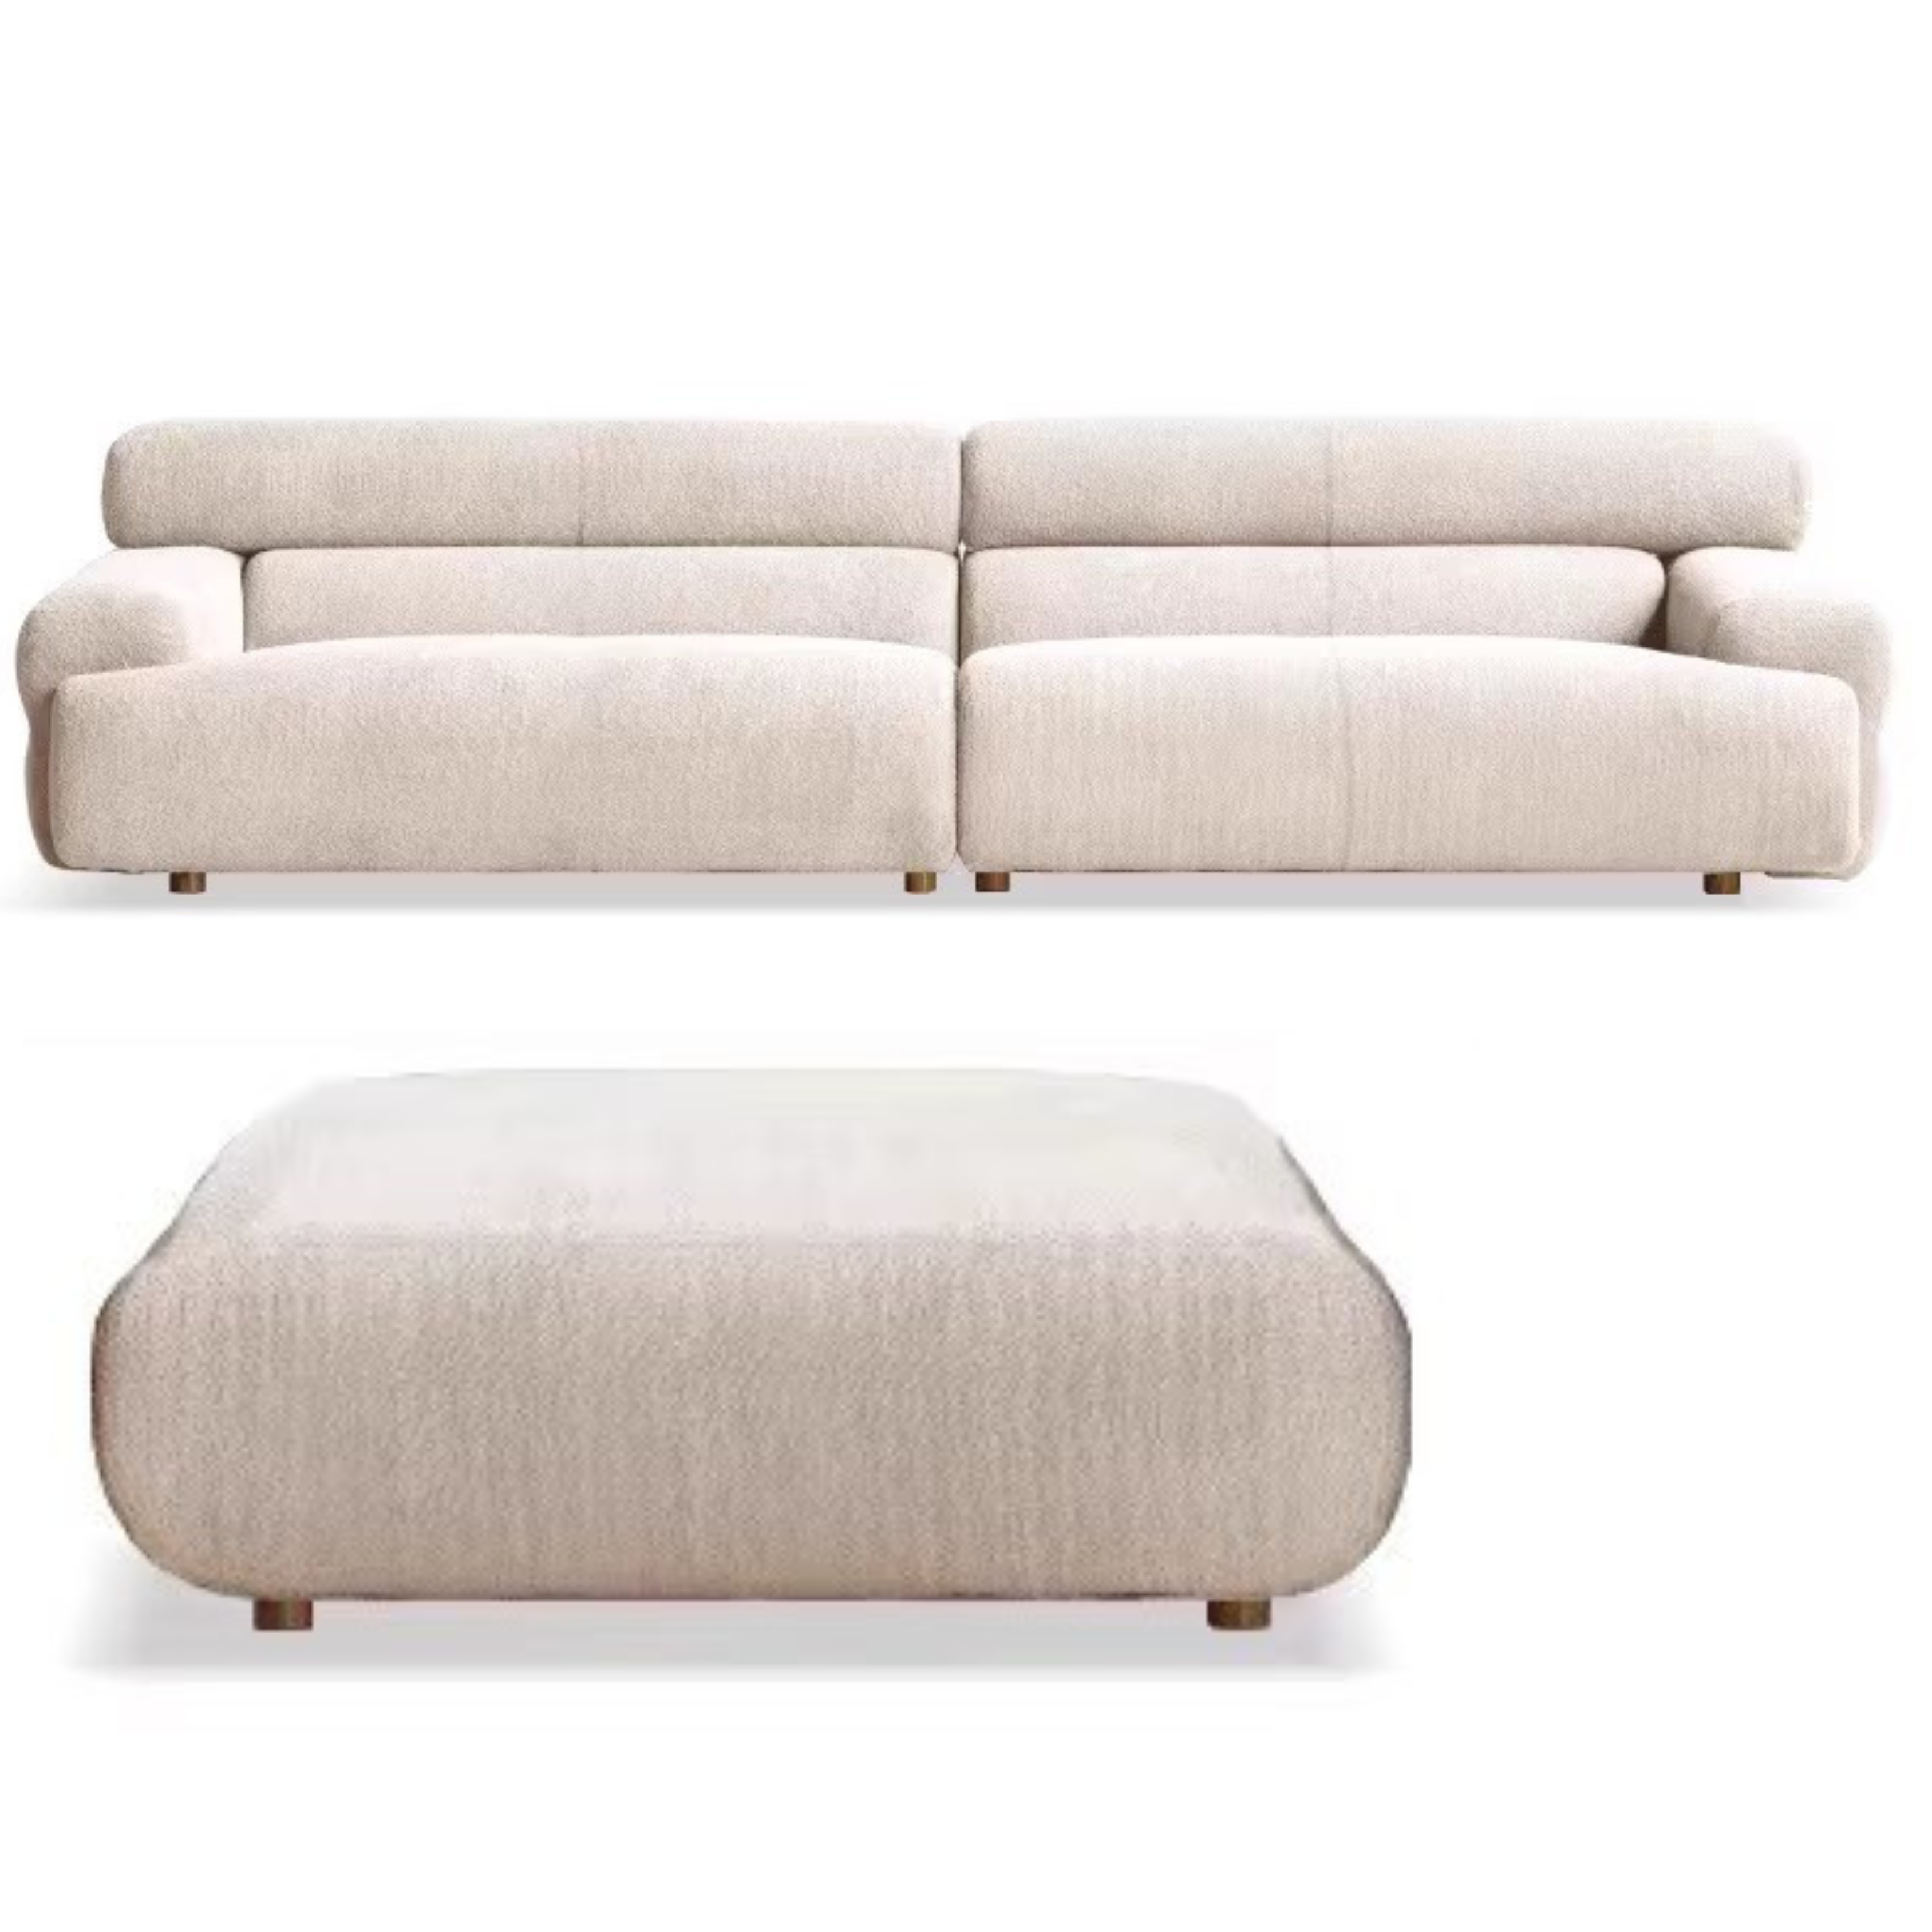 Lamb velvet sofa)